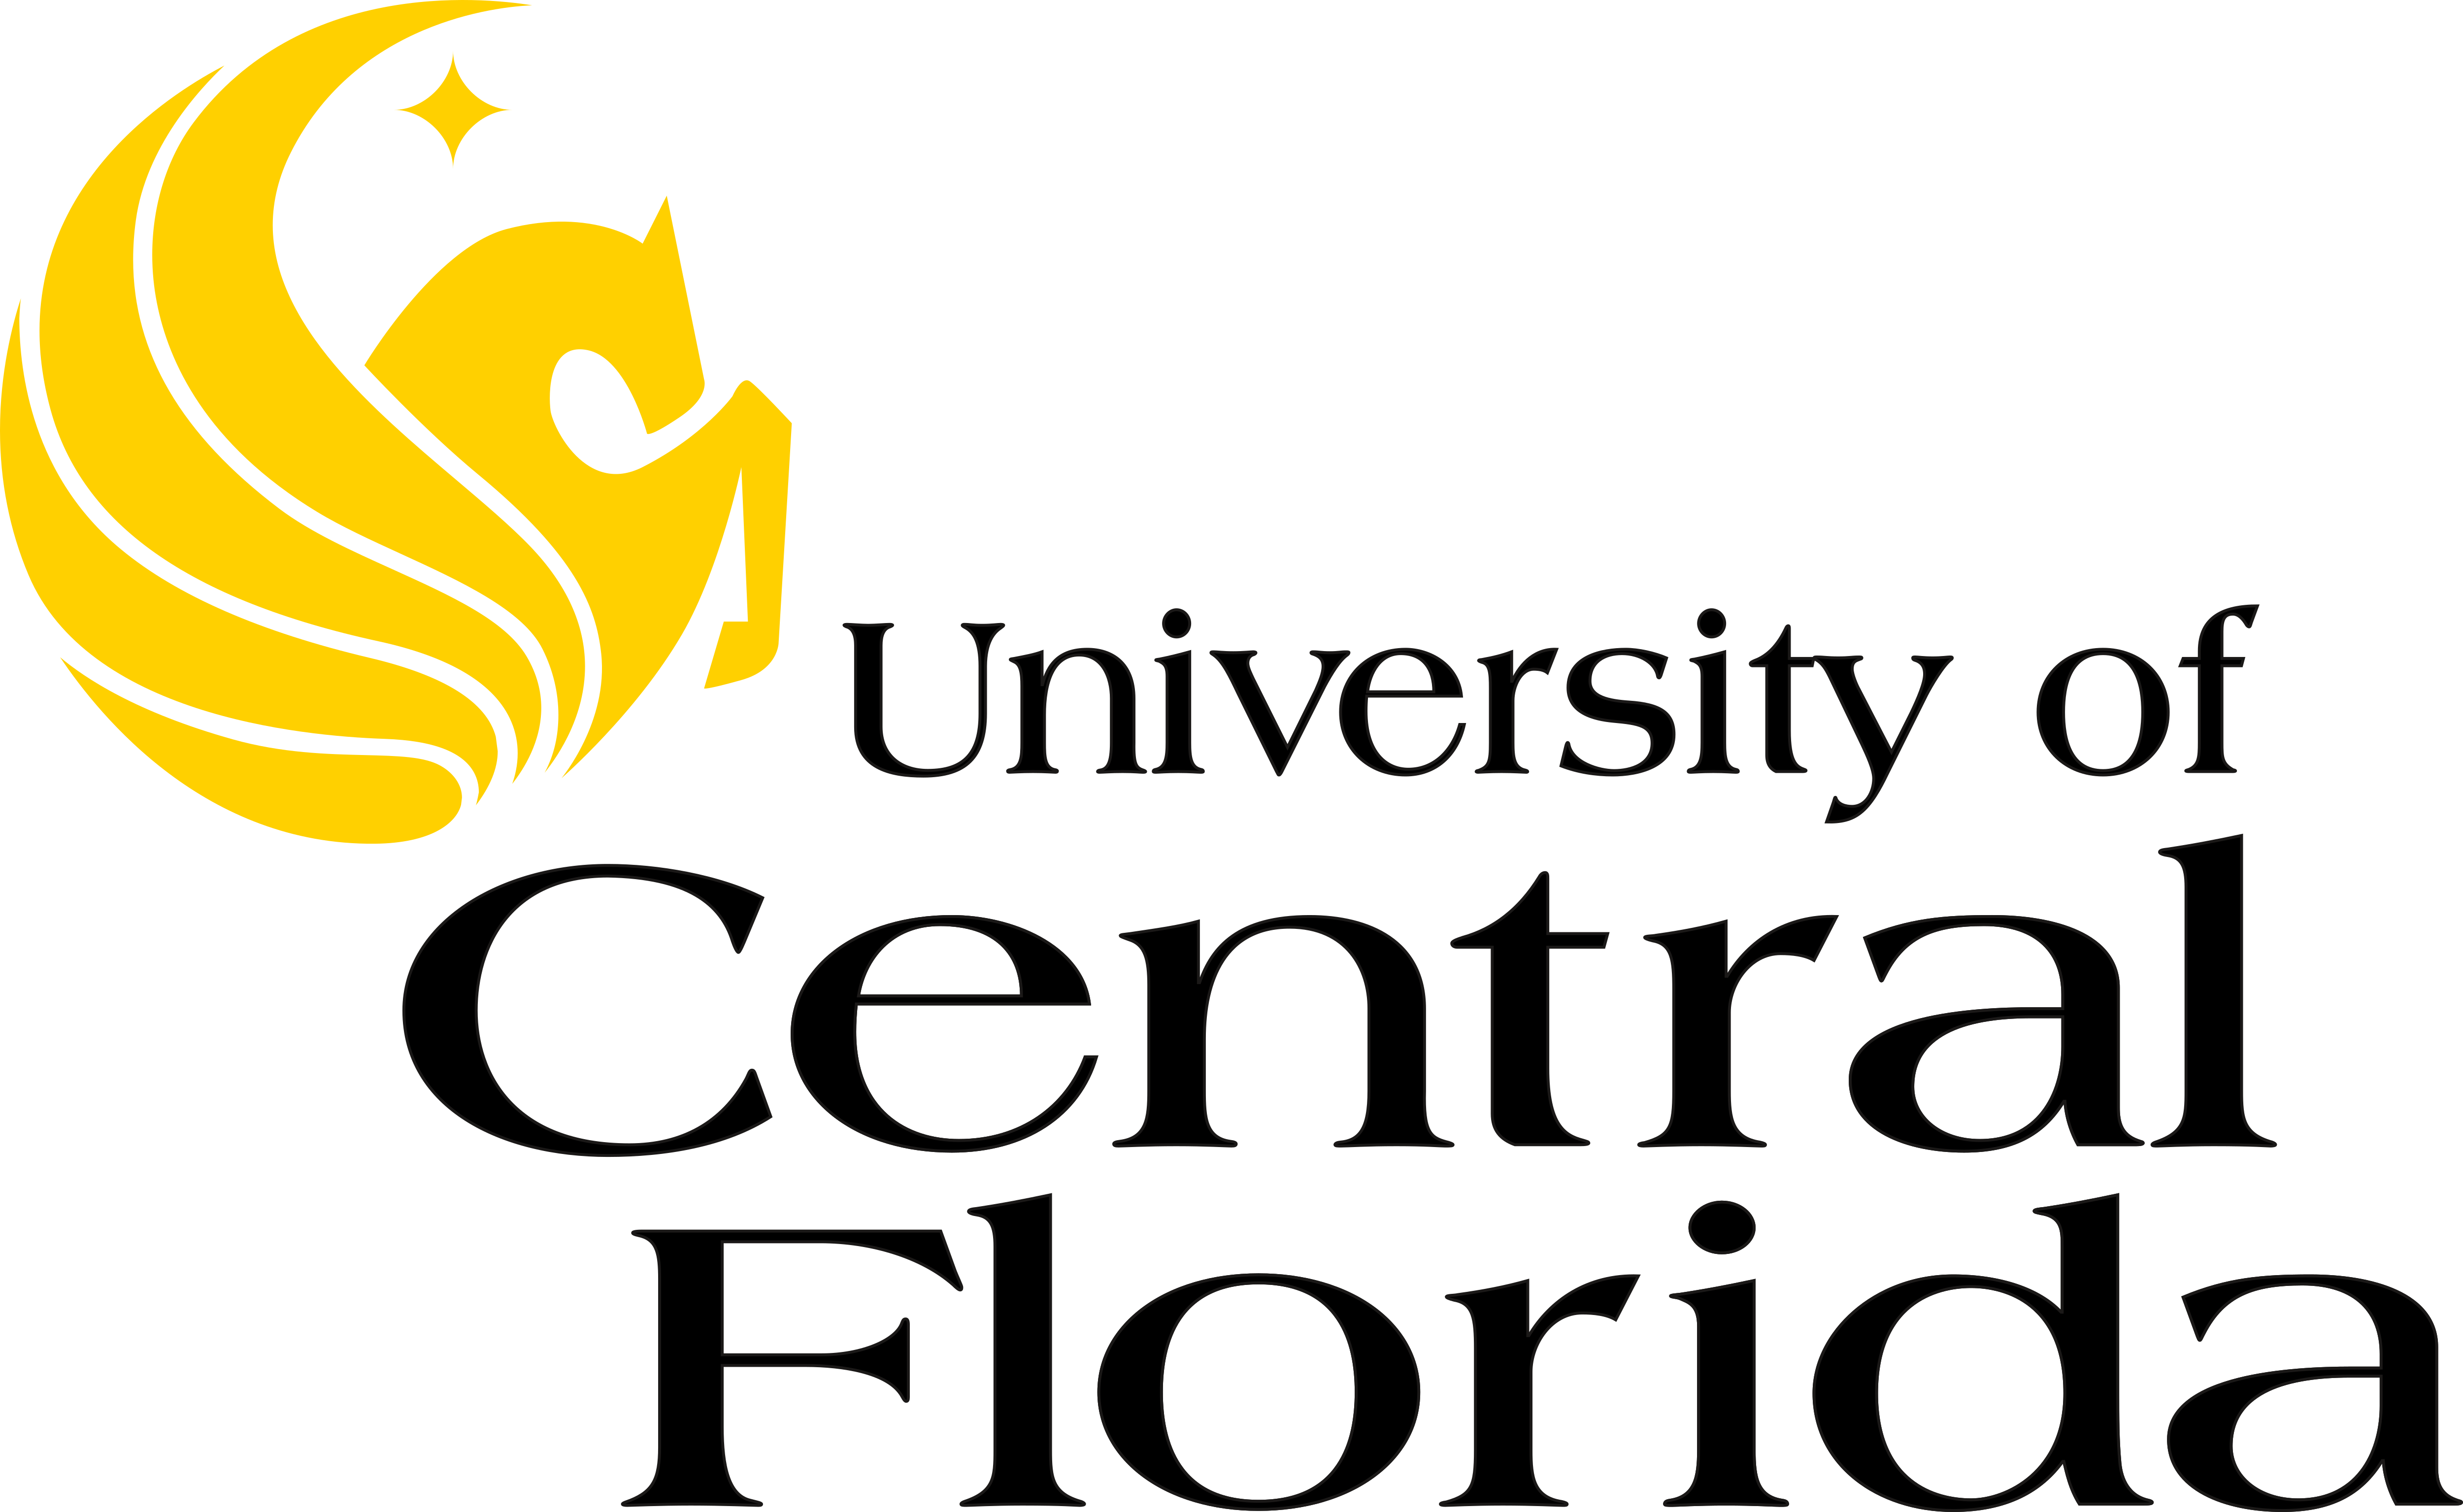 Central Florida Üniversitesi – Logoları İndir